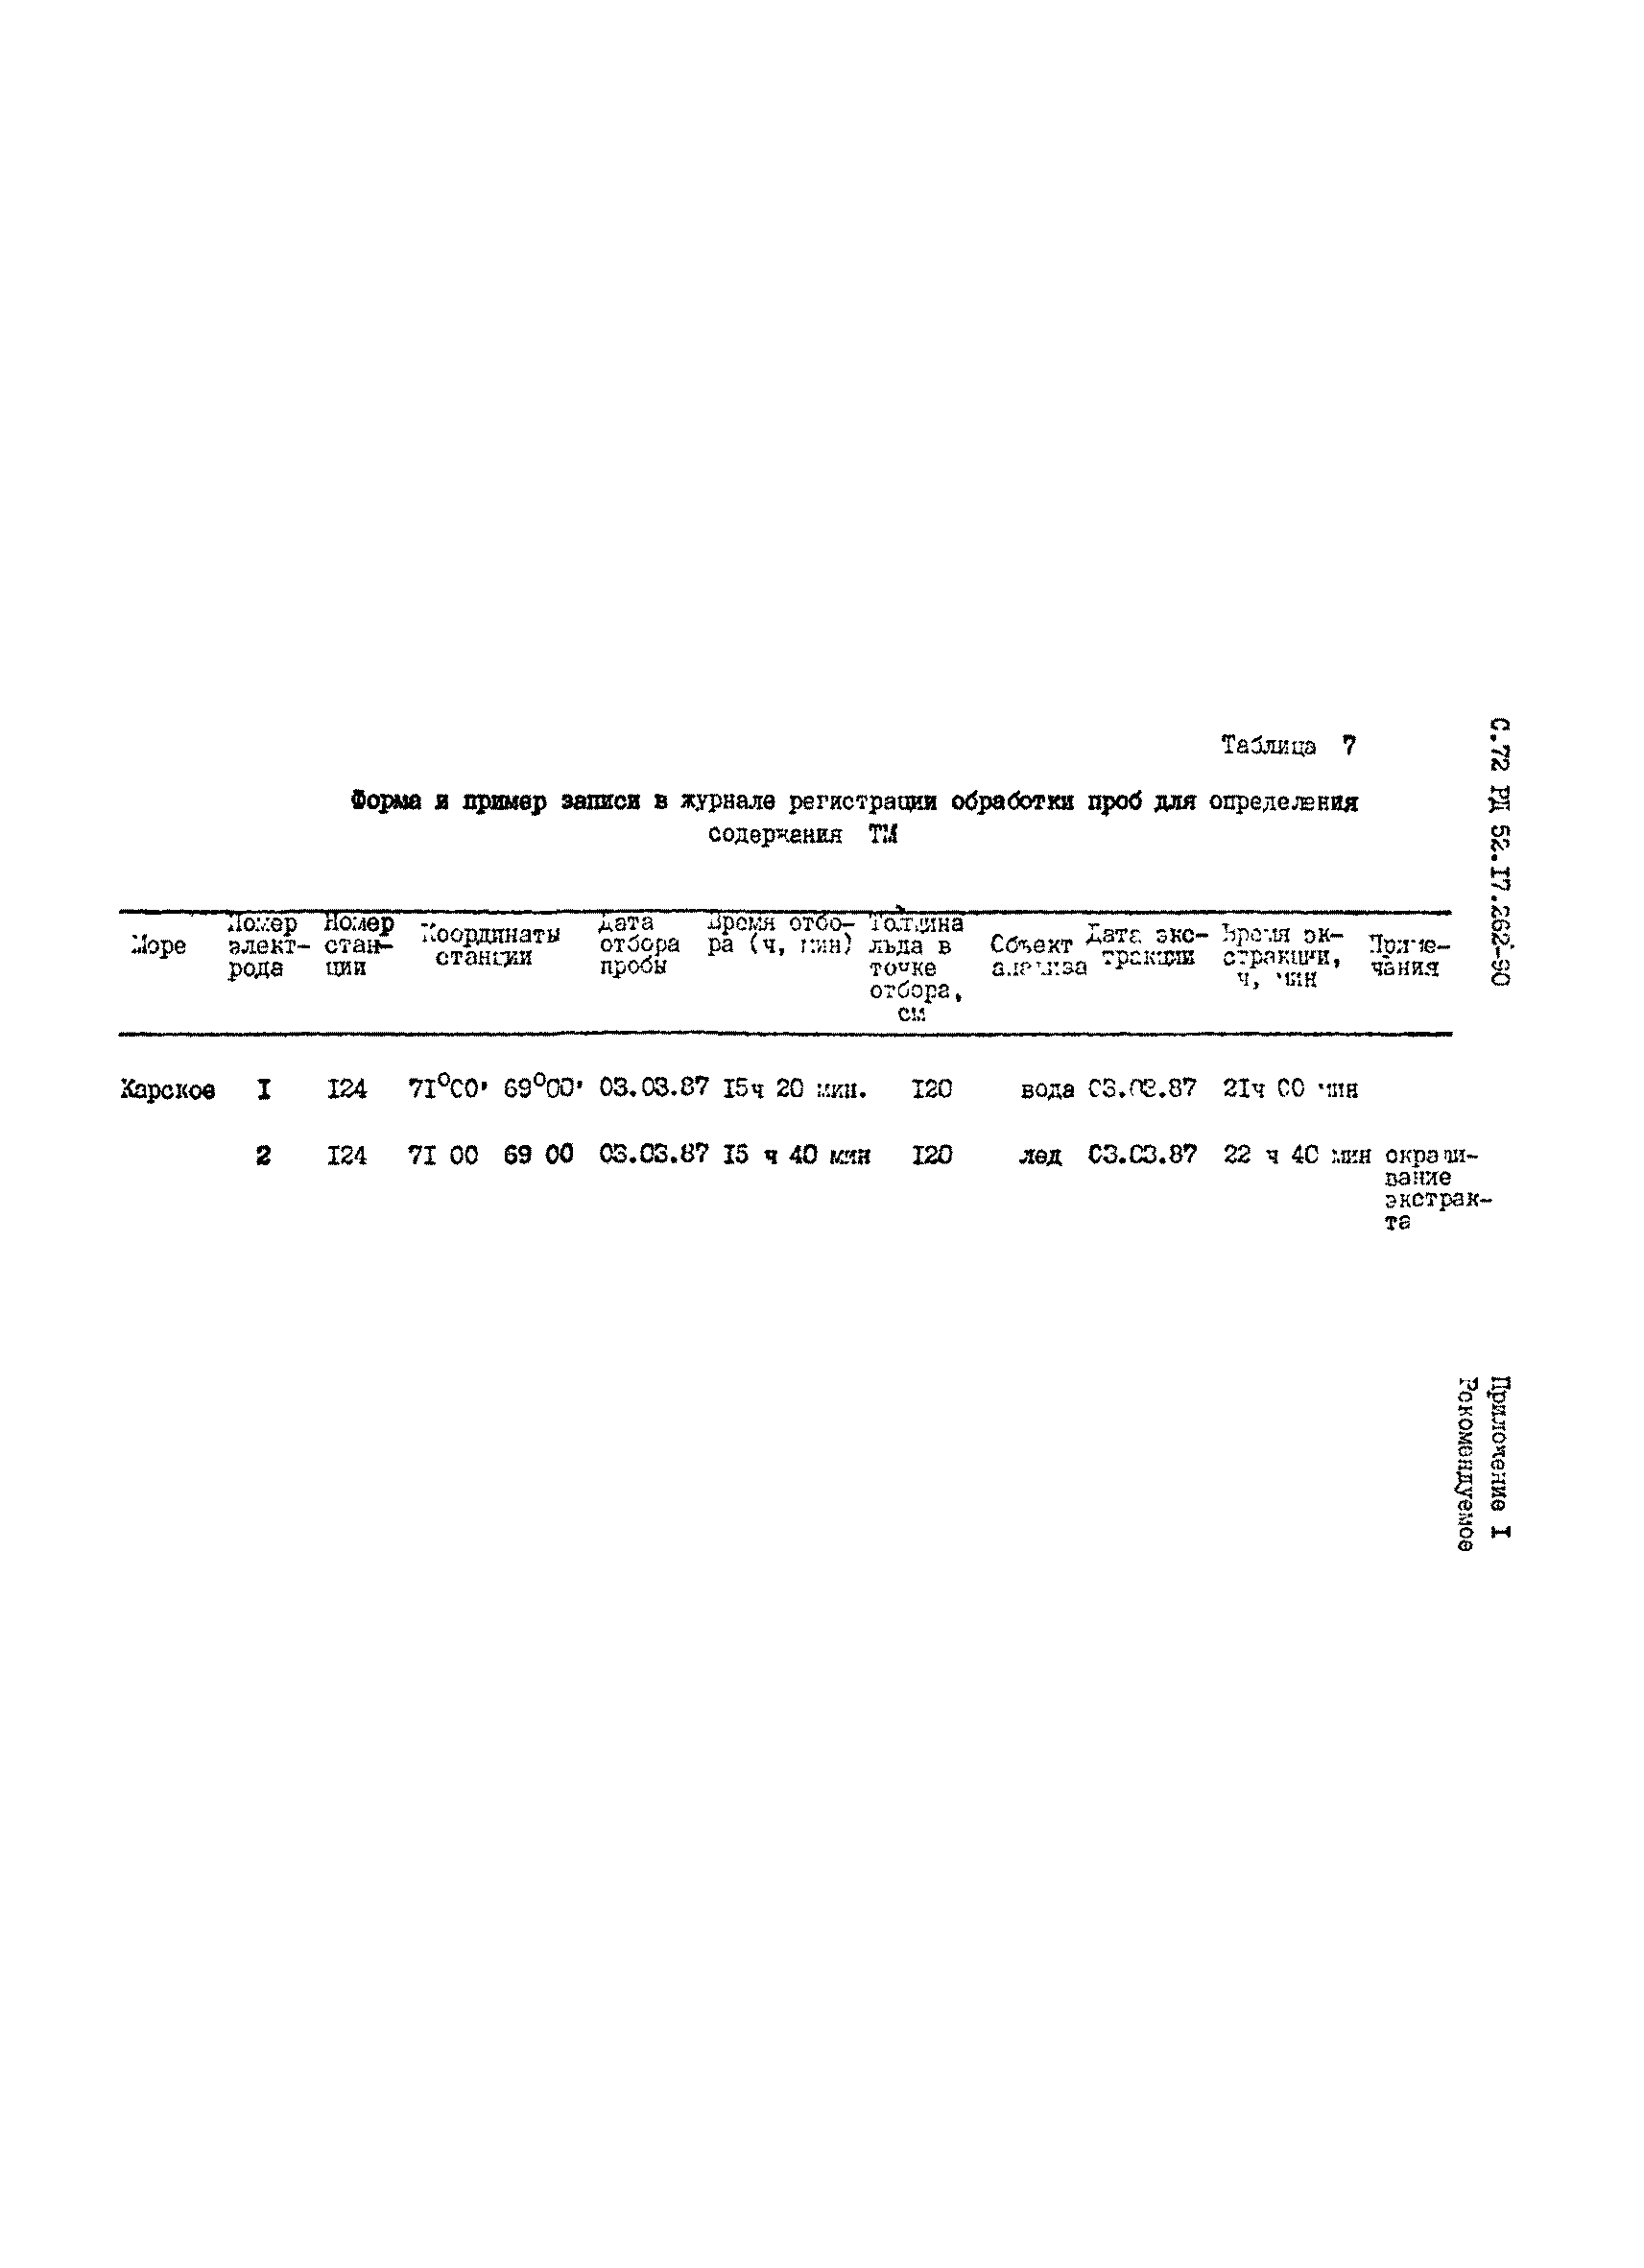 РД 52.17.262-90